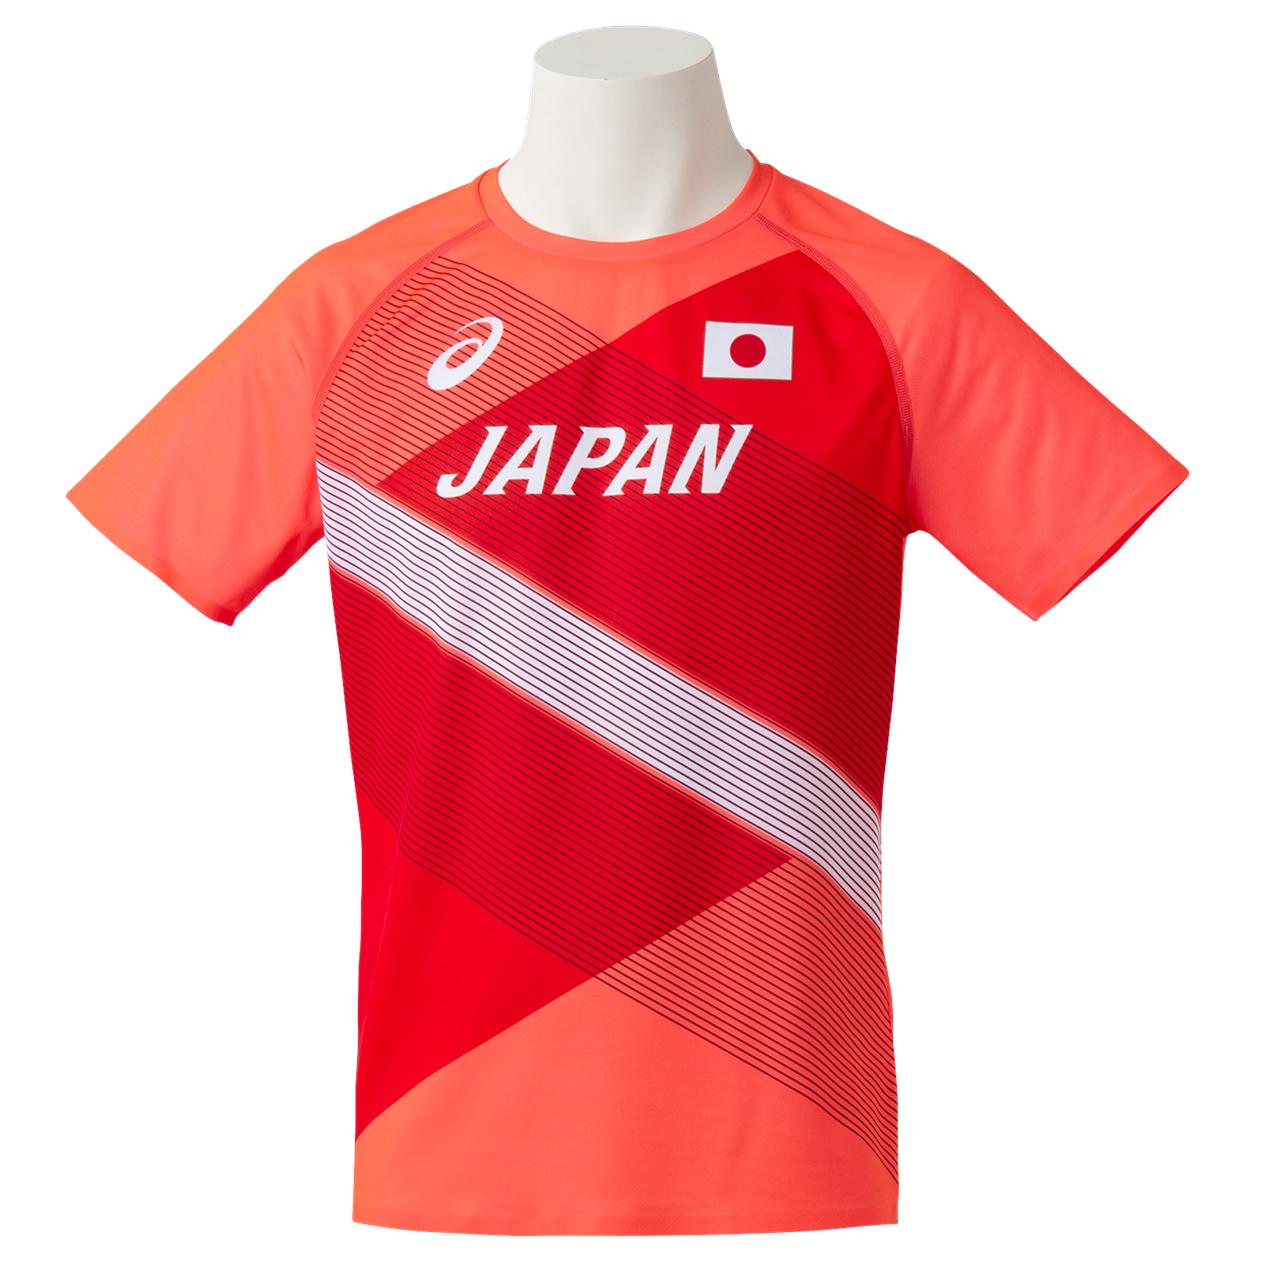 陸上日本代表オーセンティックTシャツ 両肩部分ごく僅かに色褪せあり 【ASICS陸上ウェア】2091A347-602